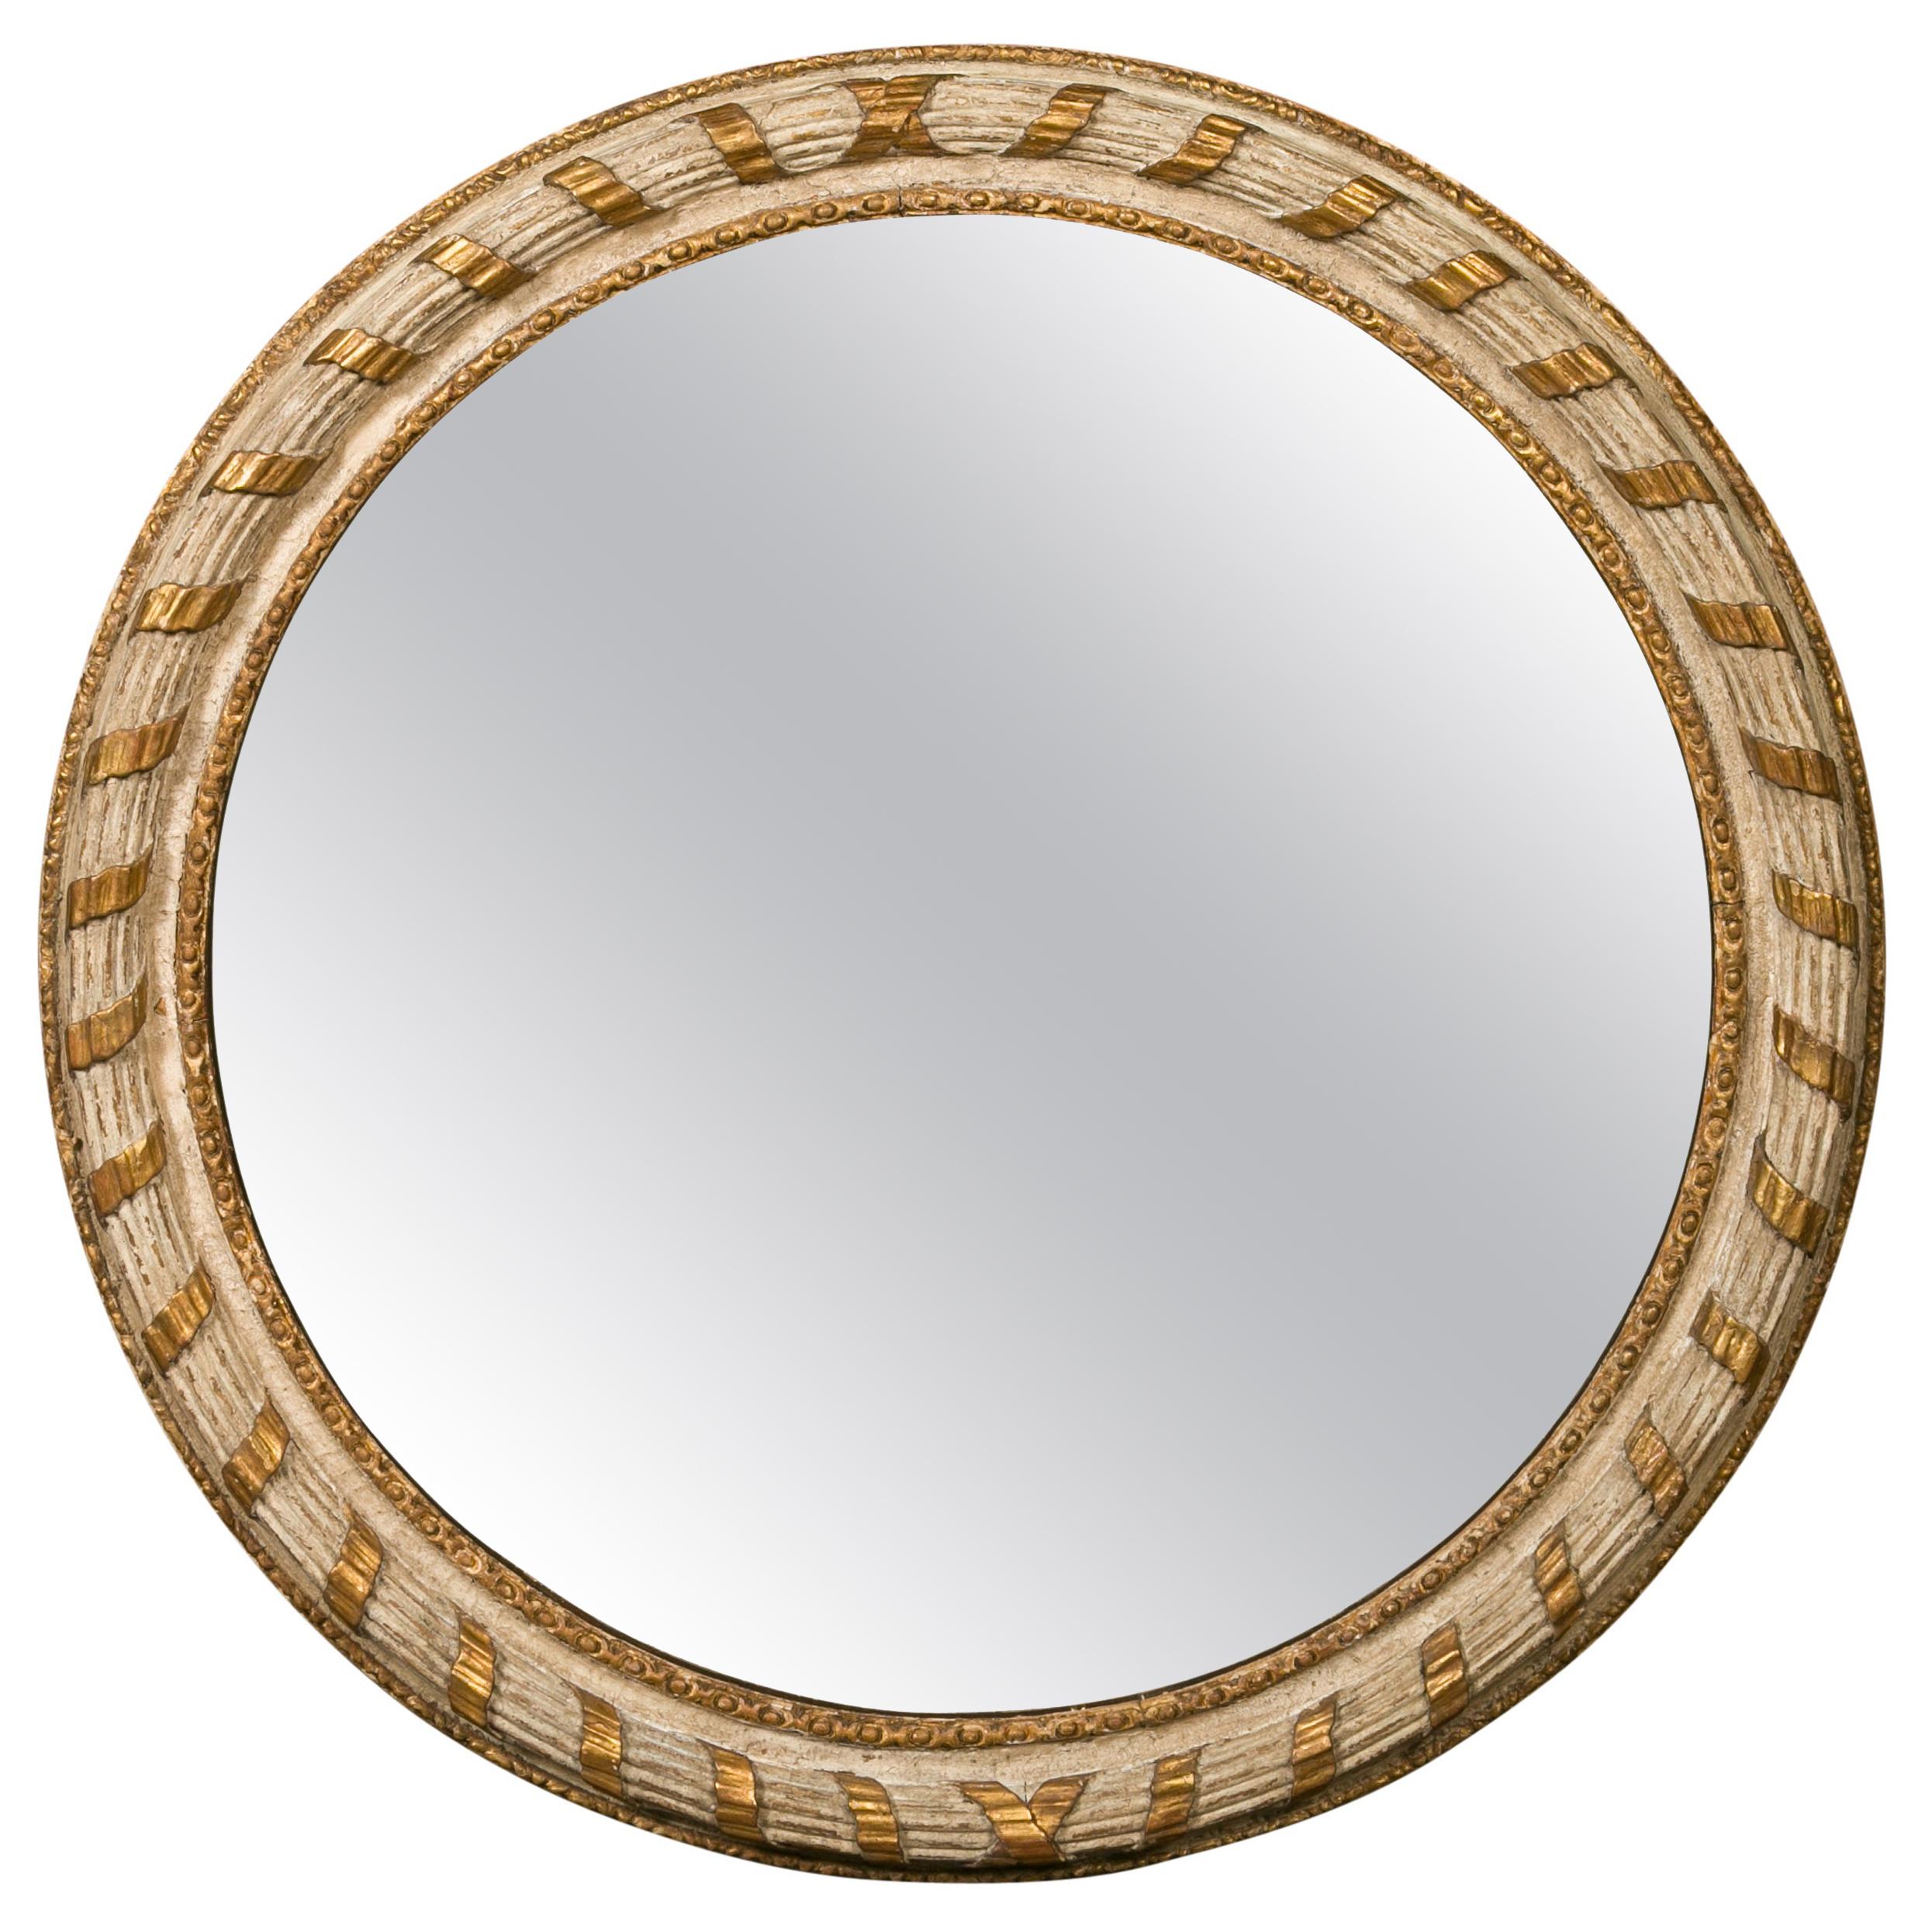 Miroir circulaire italien des années 1880:: doré et peint:: avec ruban sculpté